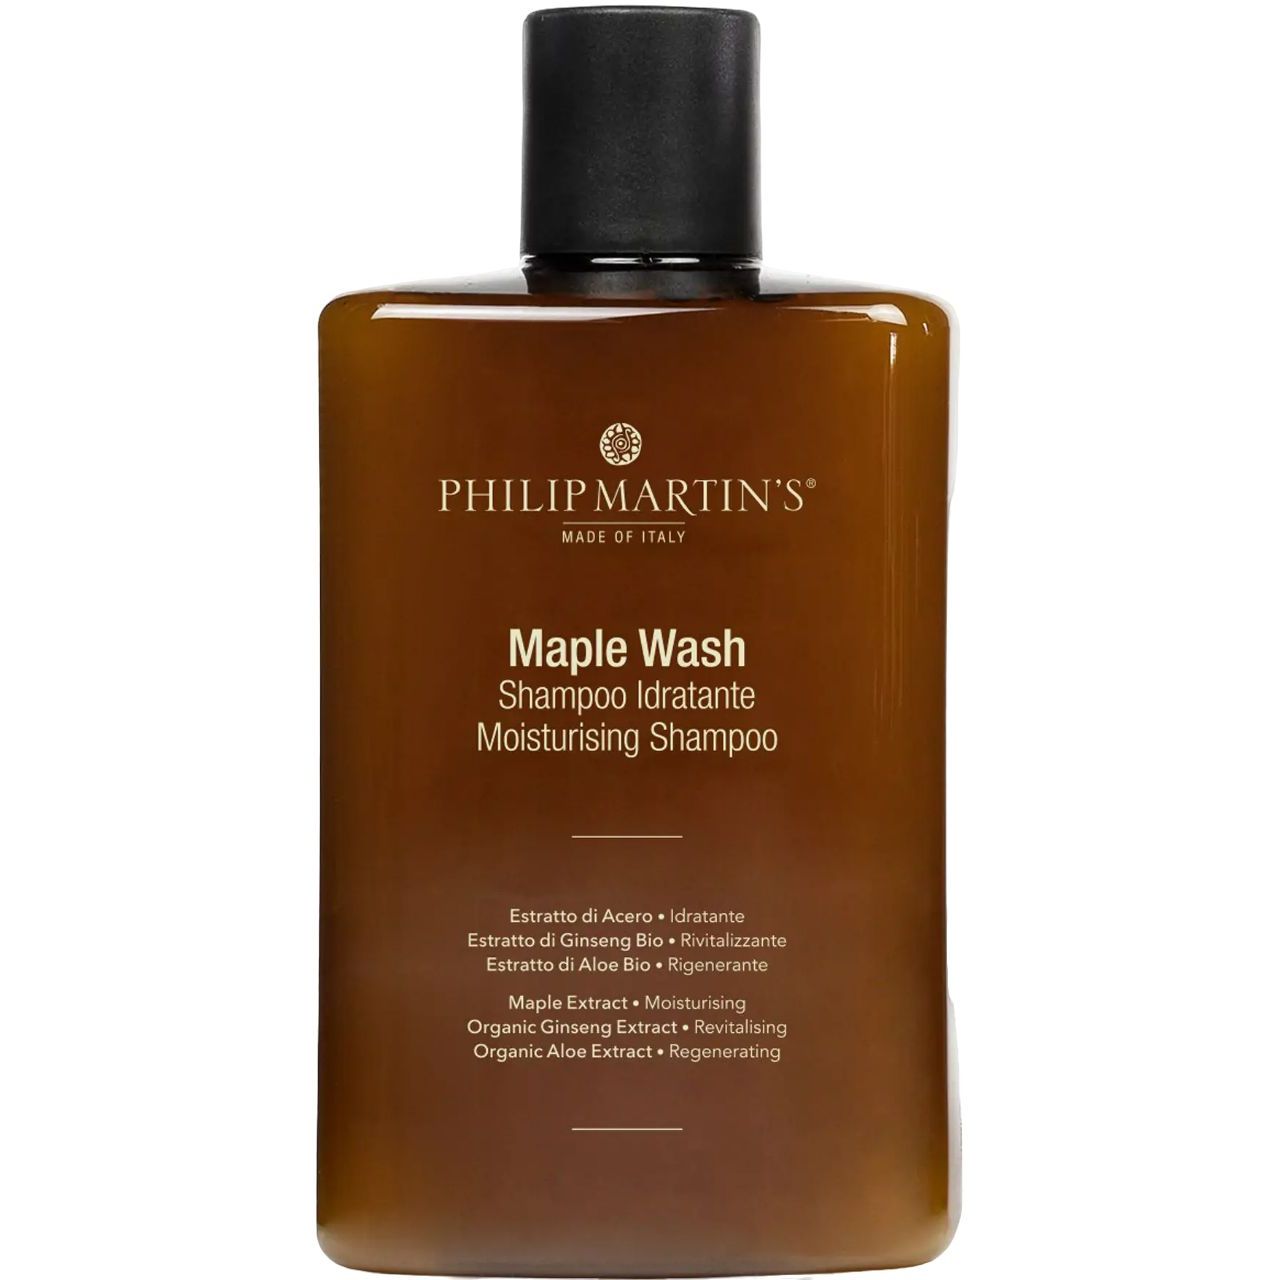 Увлажняющий шампунь Philip Martin's Maple Wash, 320 мл - фото 1